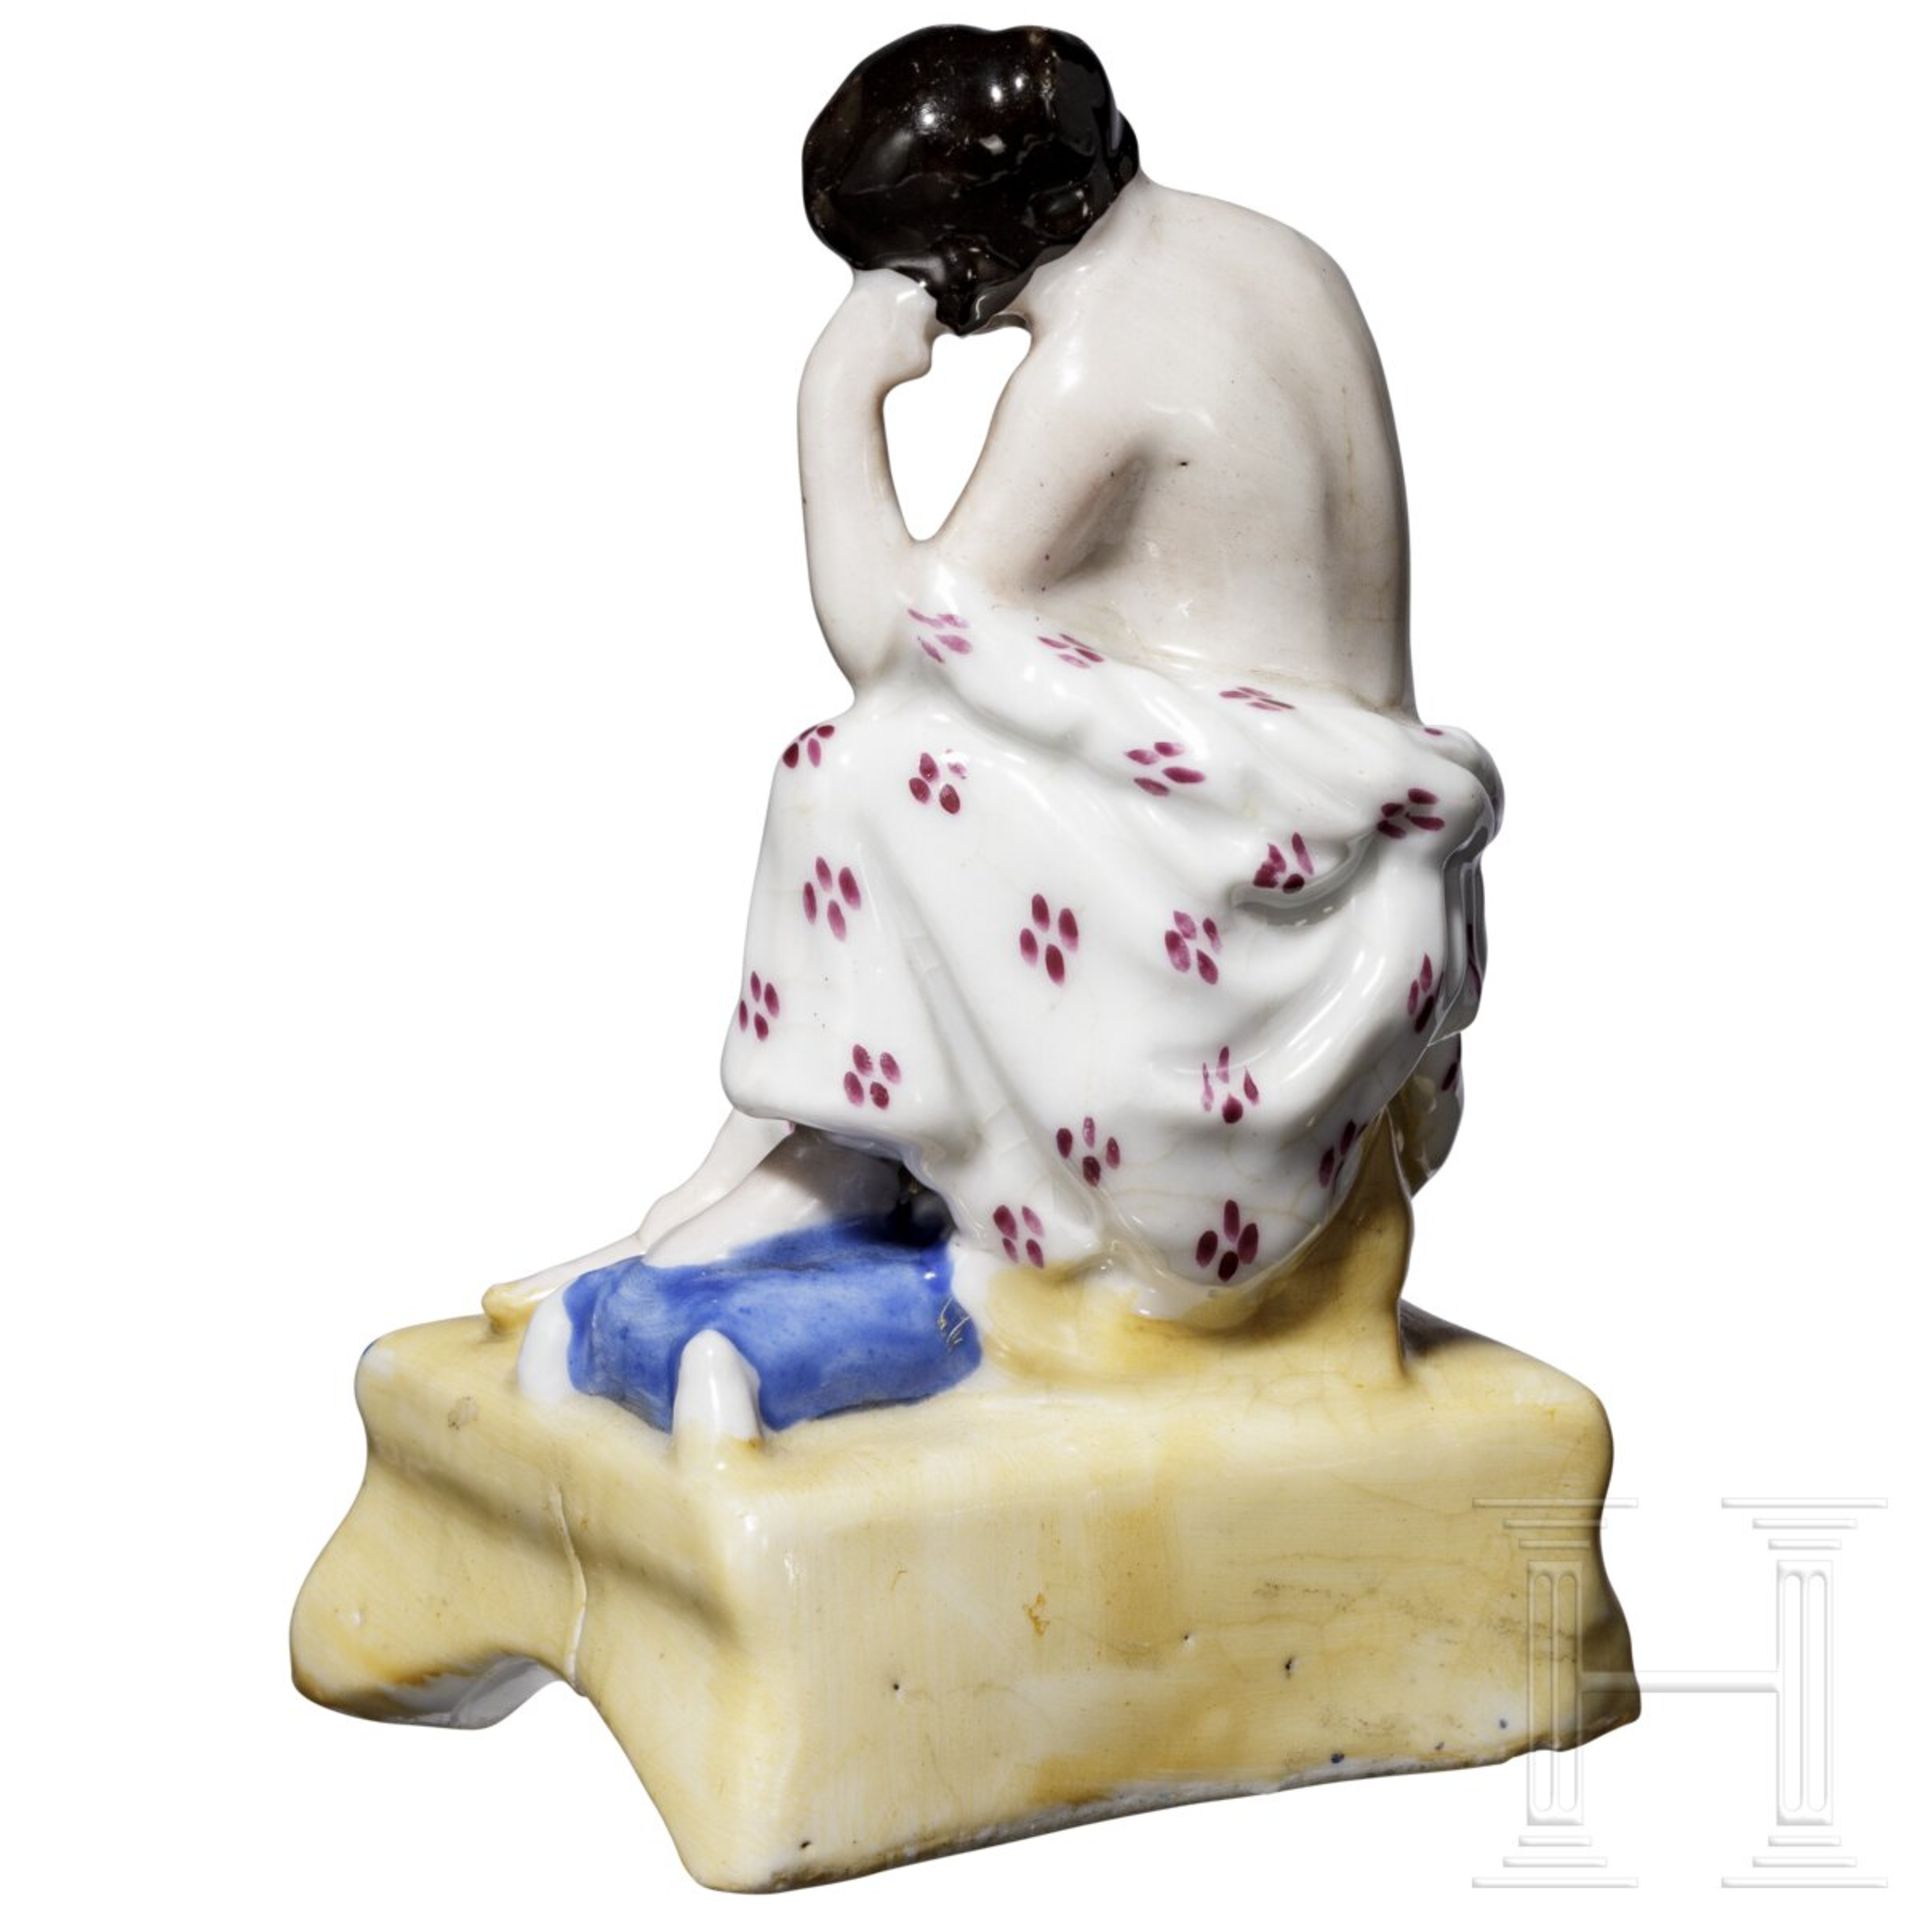 Erotische Porzellanfigur als Duftbehälter, russische Privatmanufaktur, Mitte 19. Jhdt. - Bild 3 aus 5